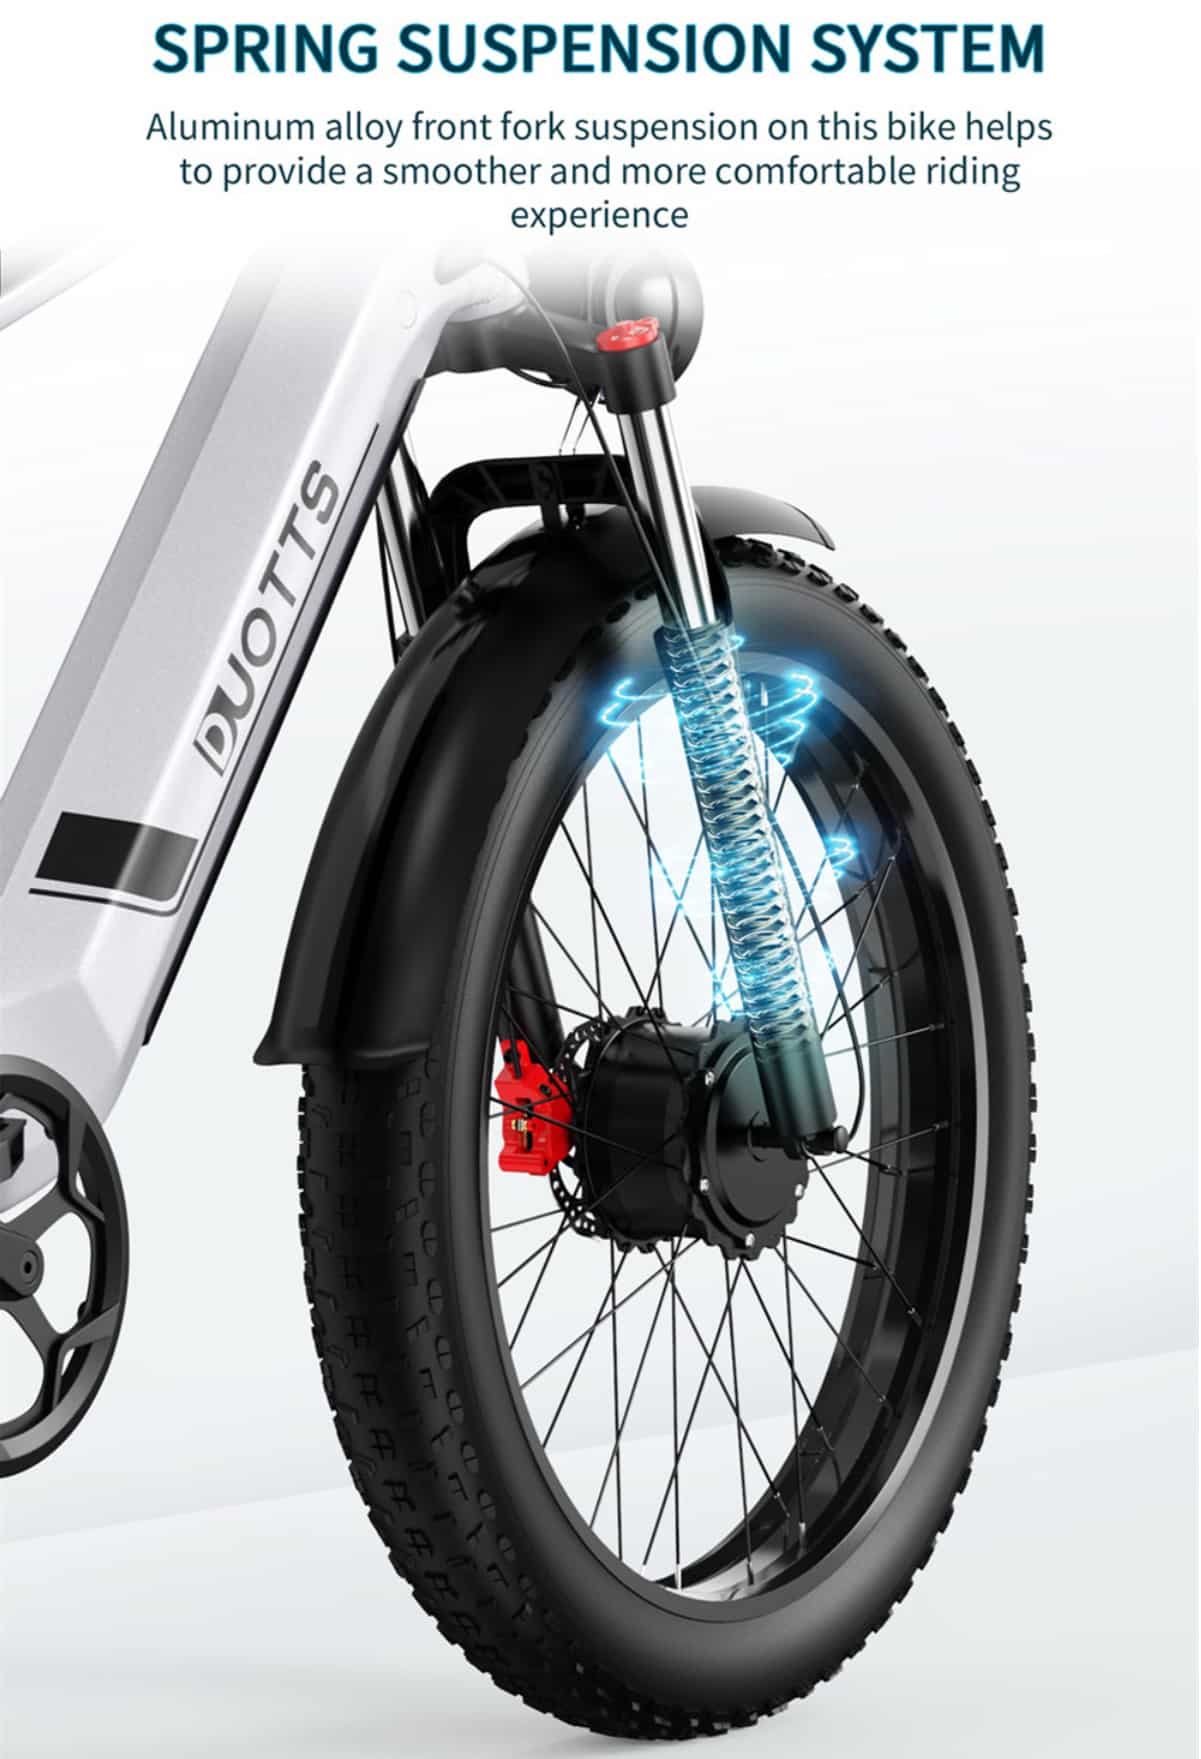 ηλεκτρικό ποδήλατο DUOTTS F26, Το μέλλον της ηλεκτρικής ποδηλασίας: Μια ματιά στο ηλεκτρικό ποδήλατο DUOTTS F26